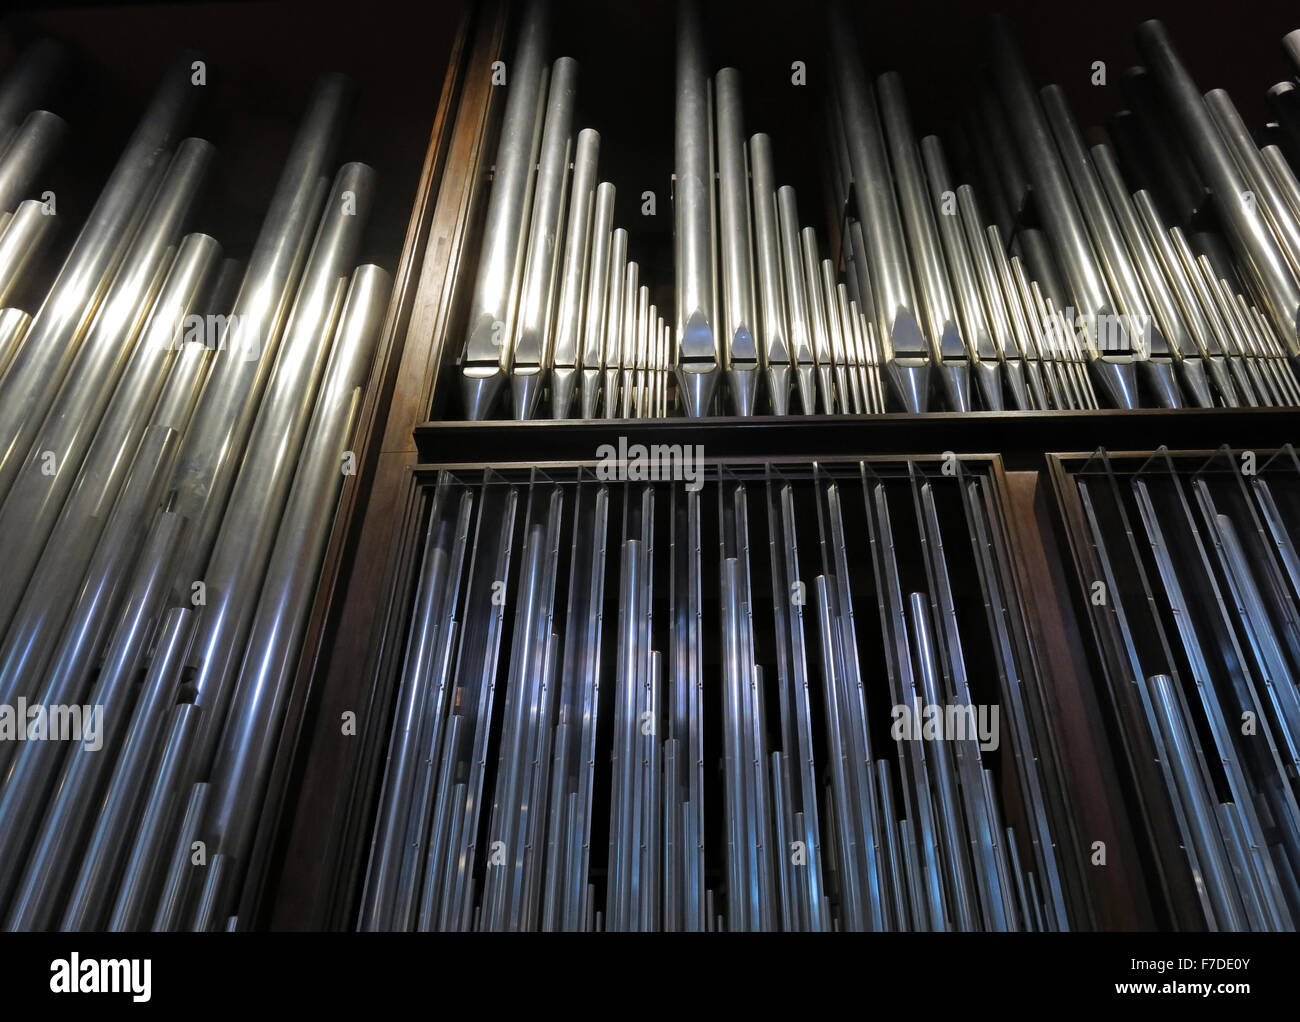 Organo presso tutti i santi, Kingston Upon Thames,Londra,l'Inghilterra,UK Foto Stock